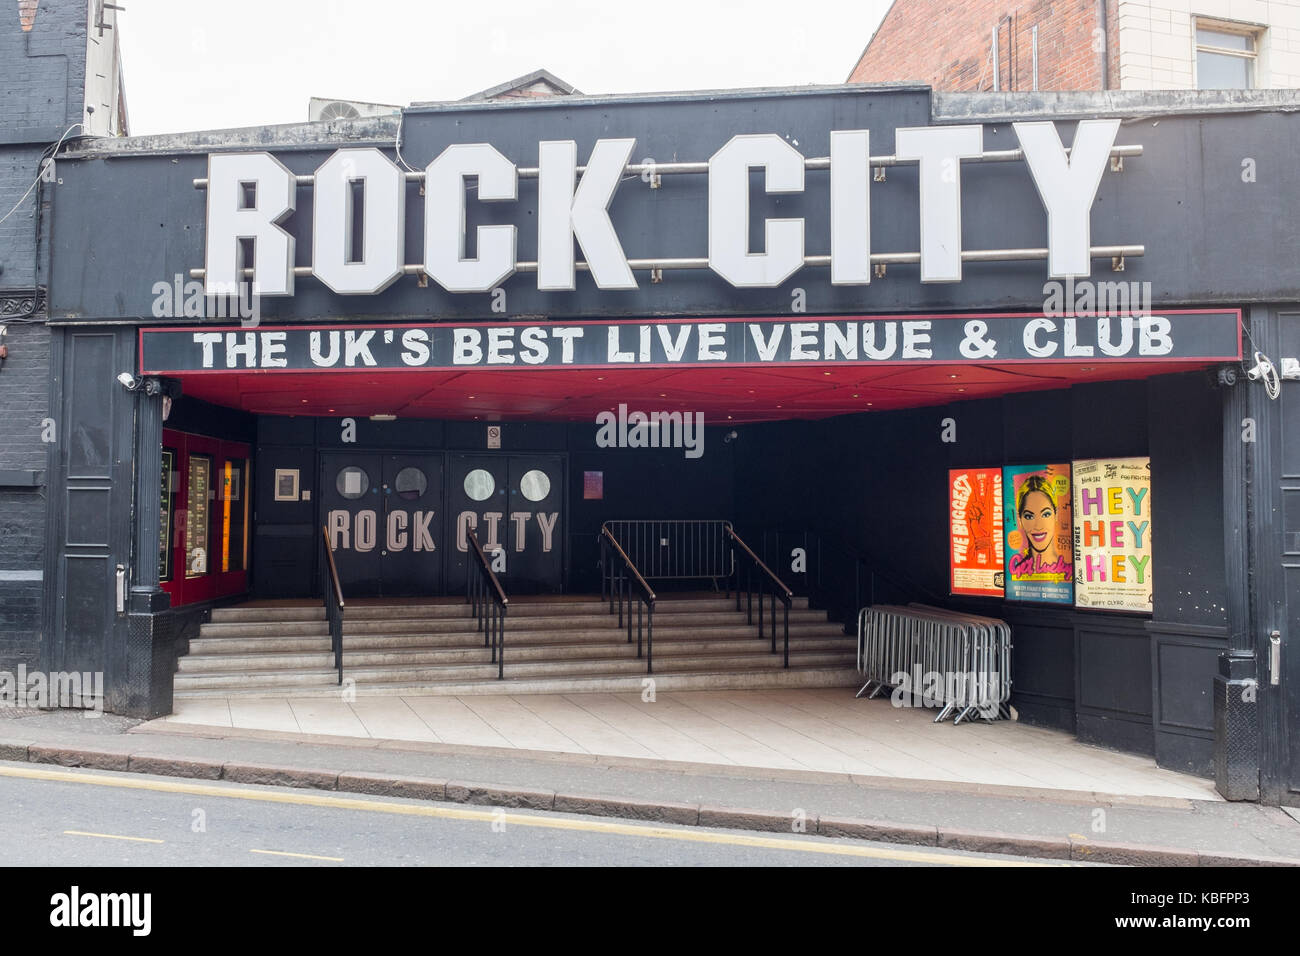 La famosa ciudad de rock local de música en directo y un club en Nottingham Foto de stock